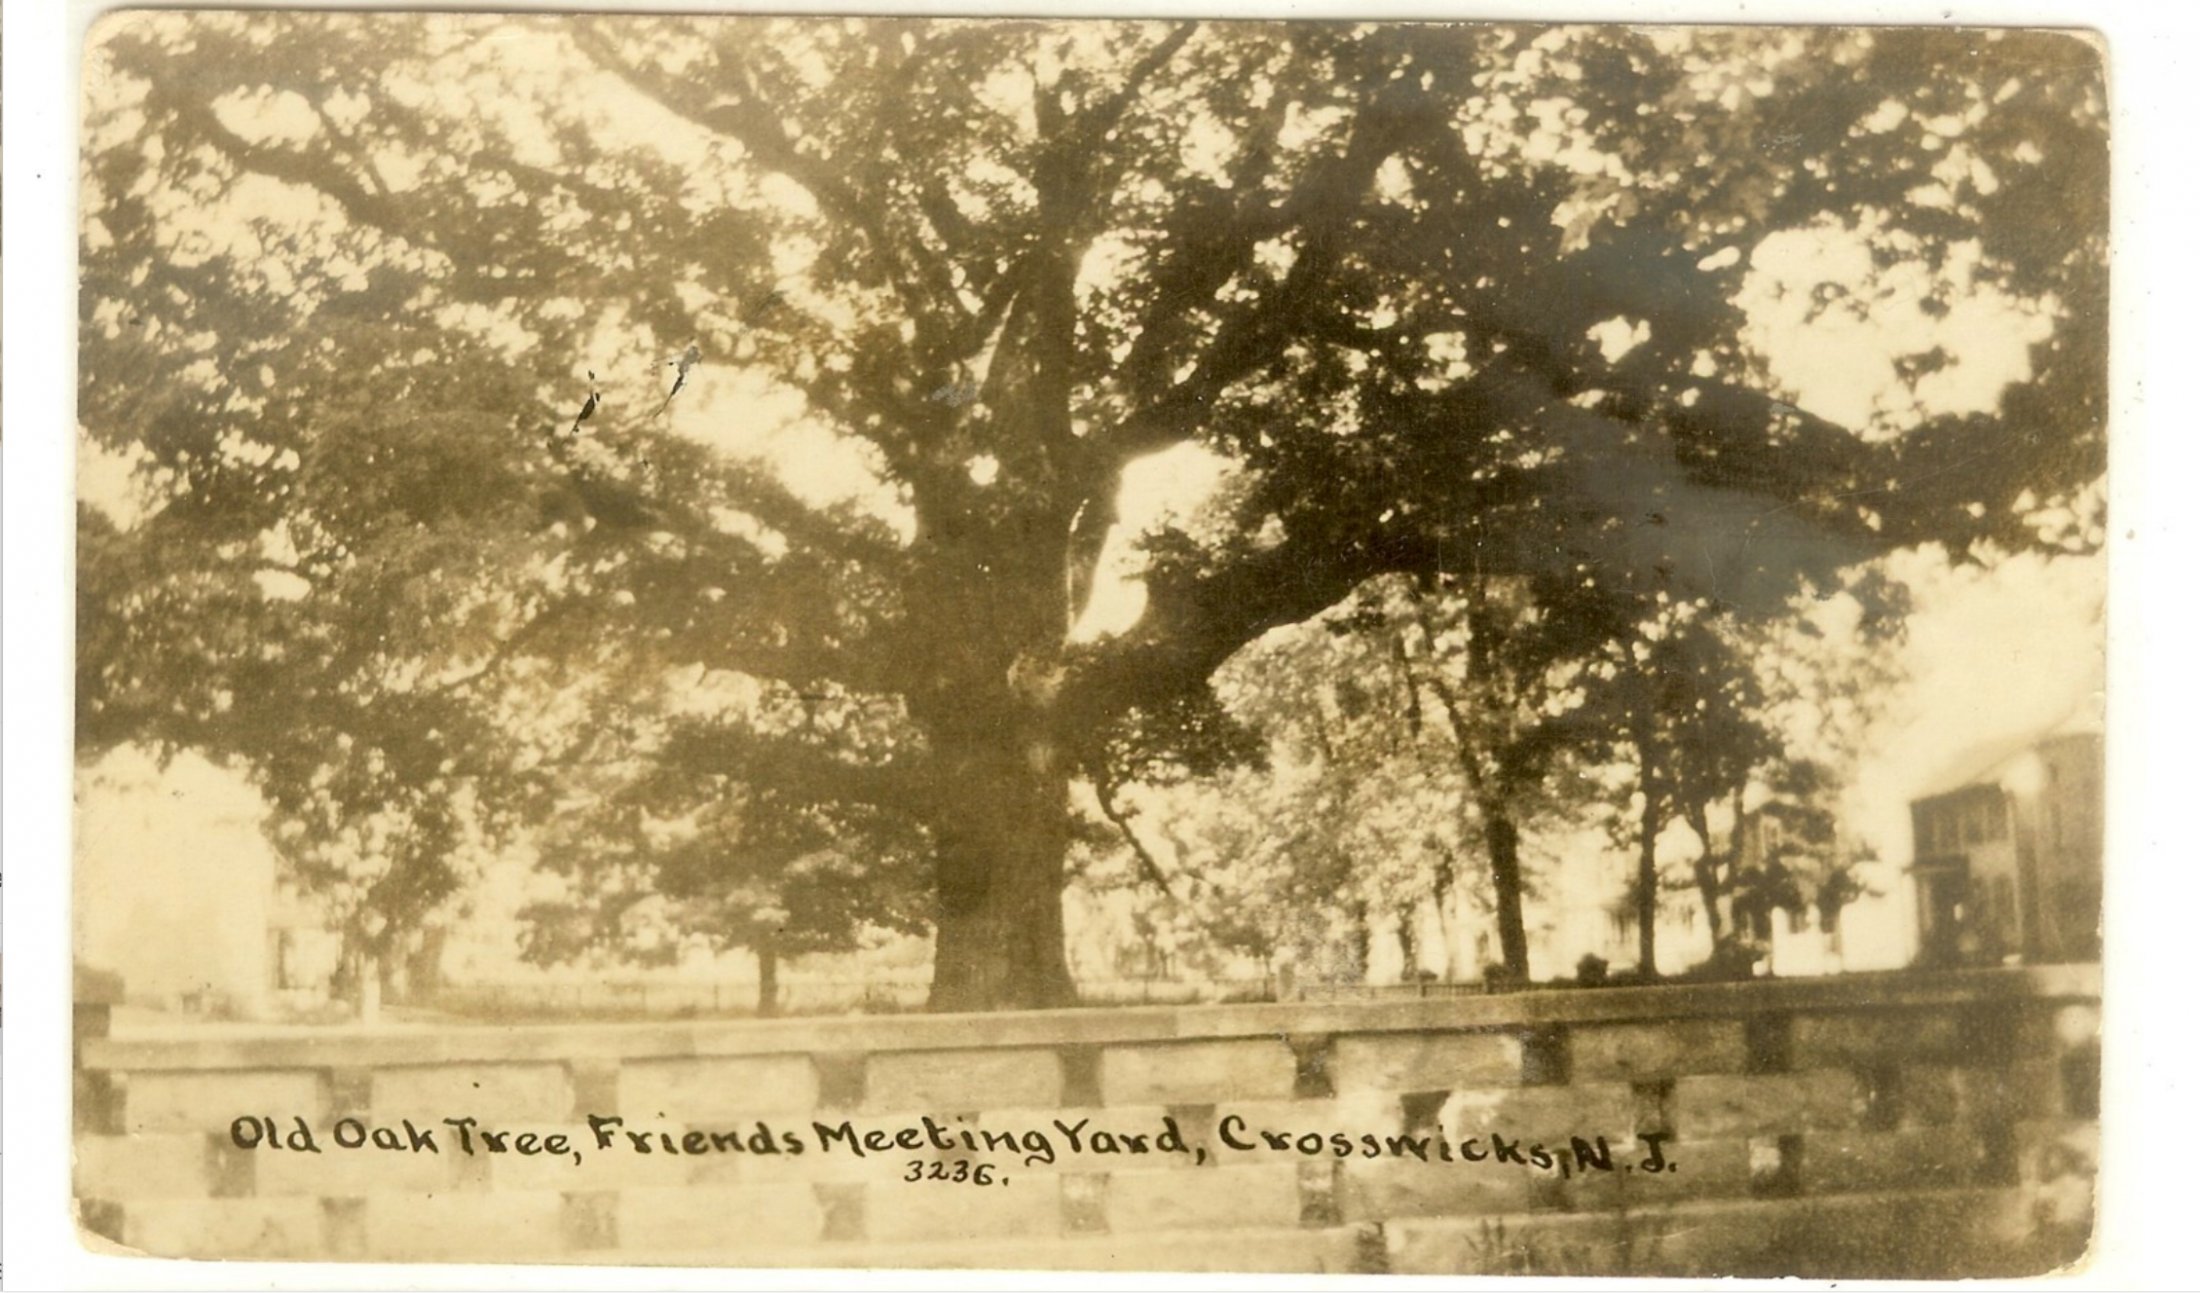 Crosswicks - Old Oak Tree in Friends MeetinghHouse Yard - c 1910